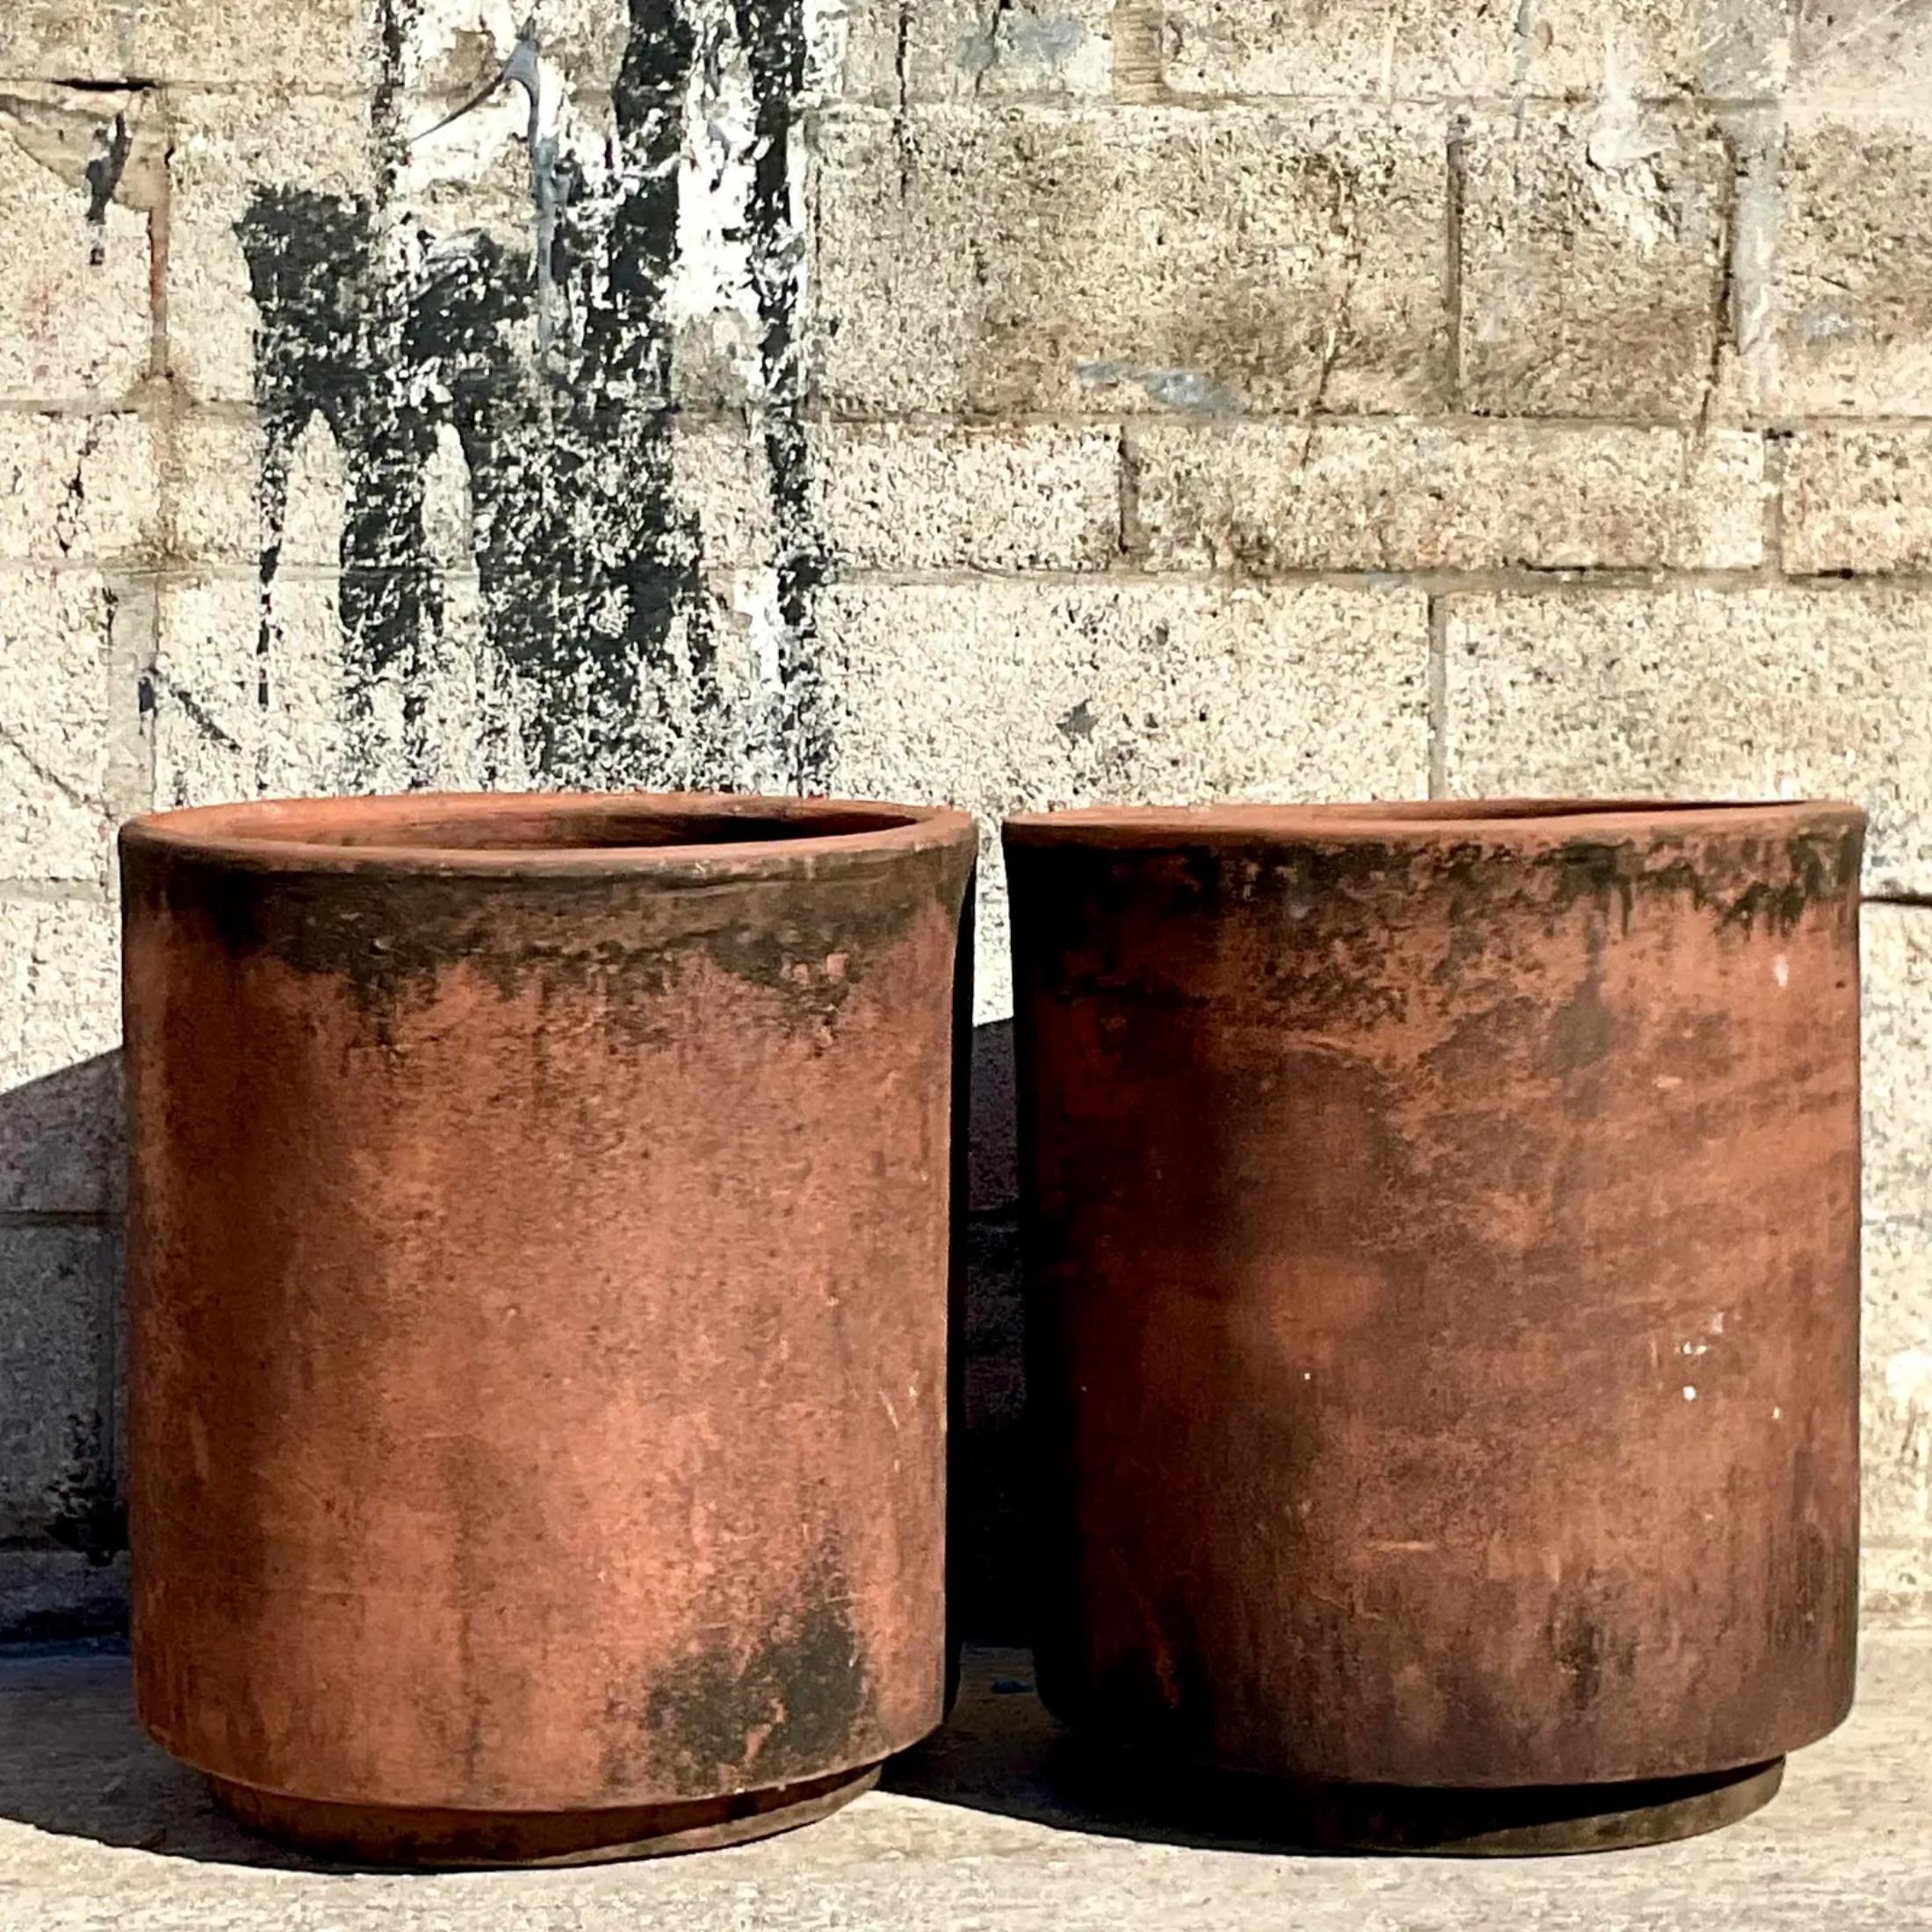 Die fabelhaften Terrakotta-Zylinder-Pflanzgefäße im Vintage-Stil, die in einem Paar geliefert werden. Erworben in einem Anwesen in Palm Beach.

